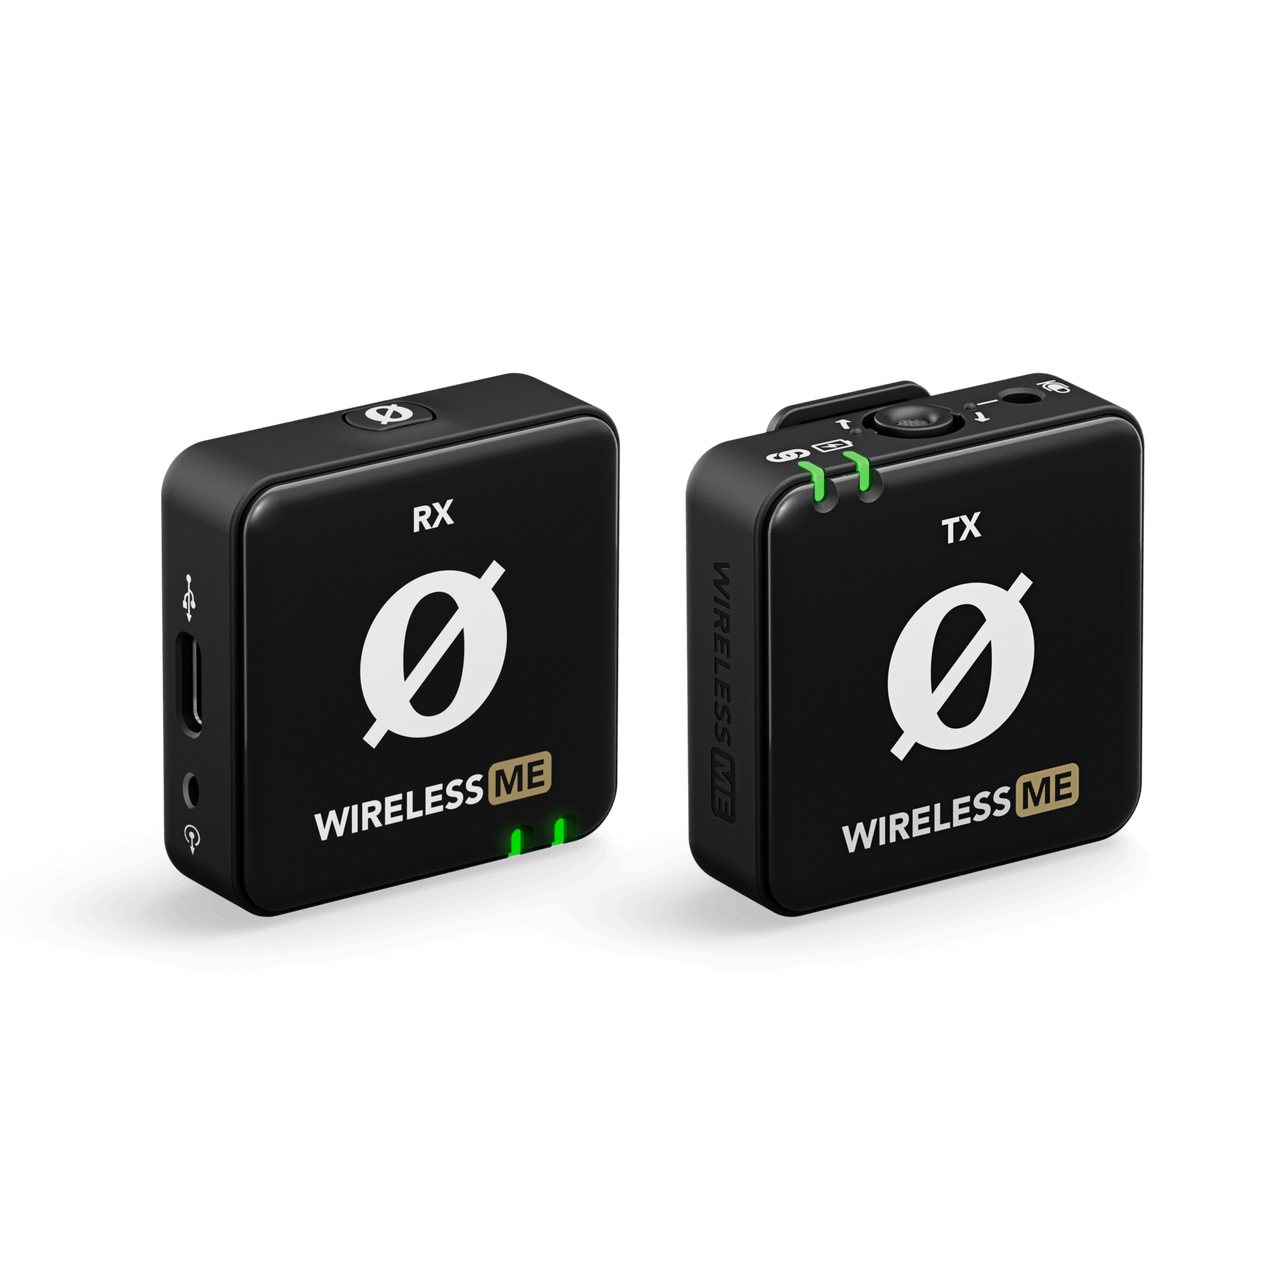 Buy - Used RODE Wireless GO II Dual